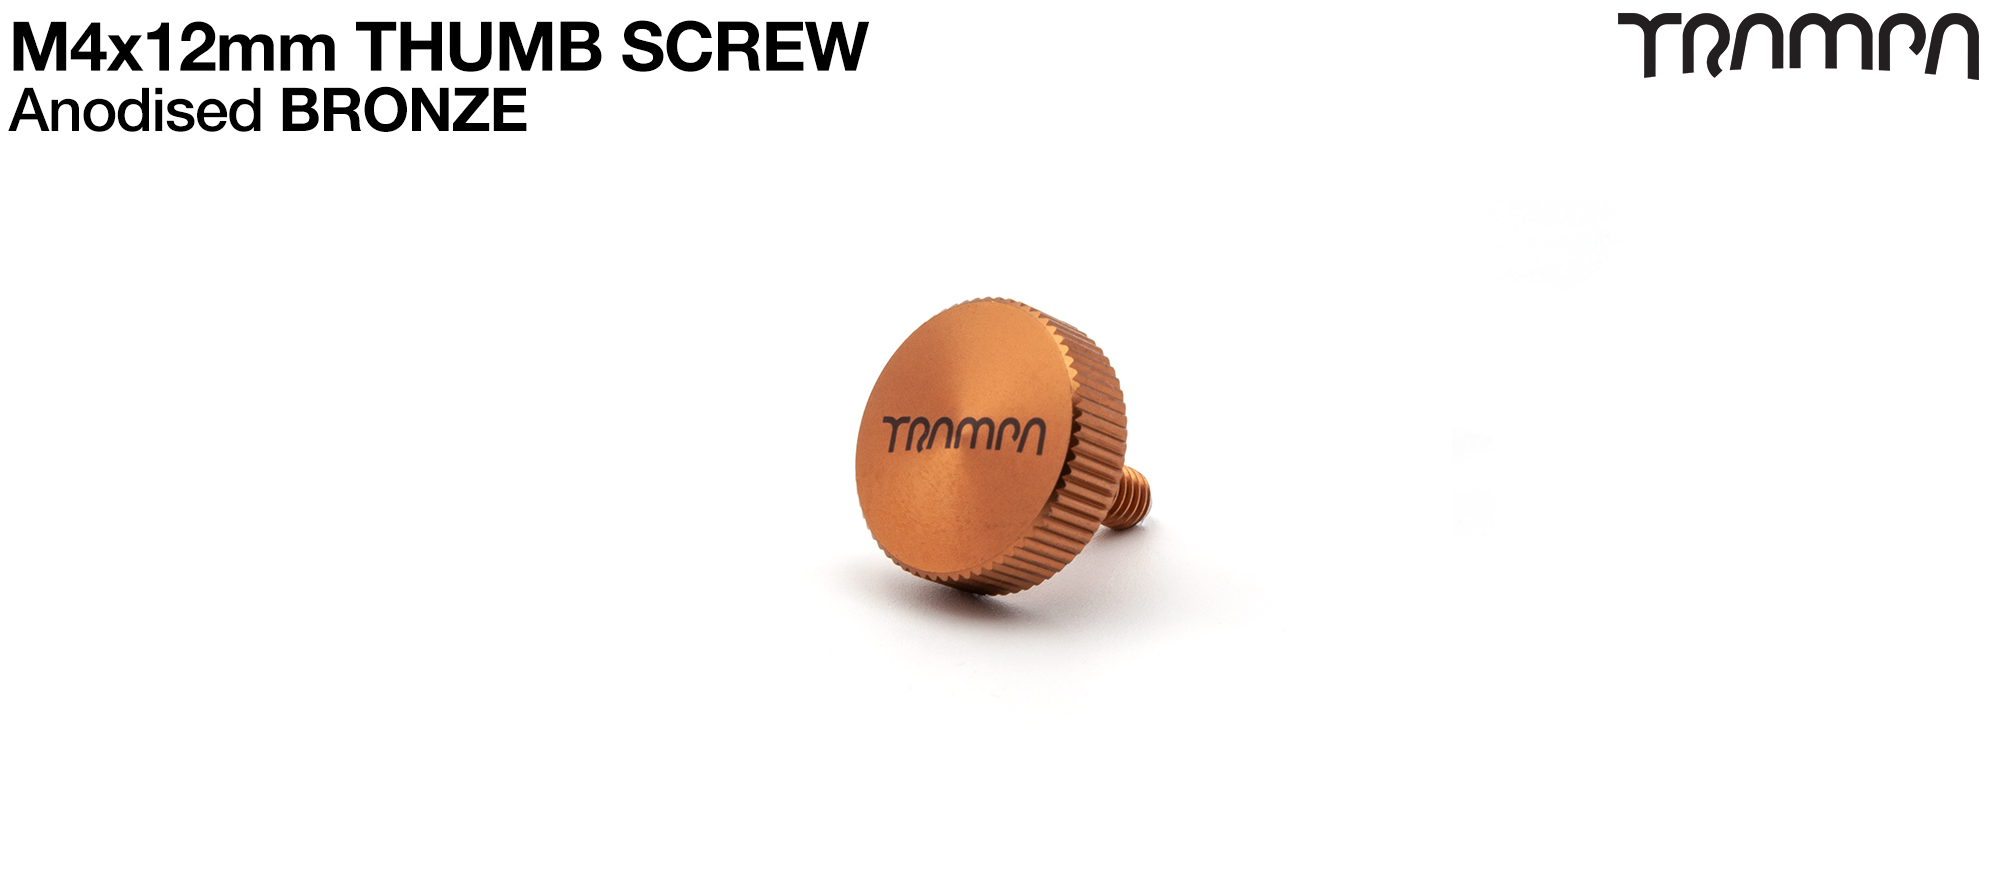 Thumb Screw - BRONZE 